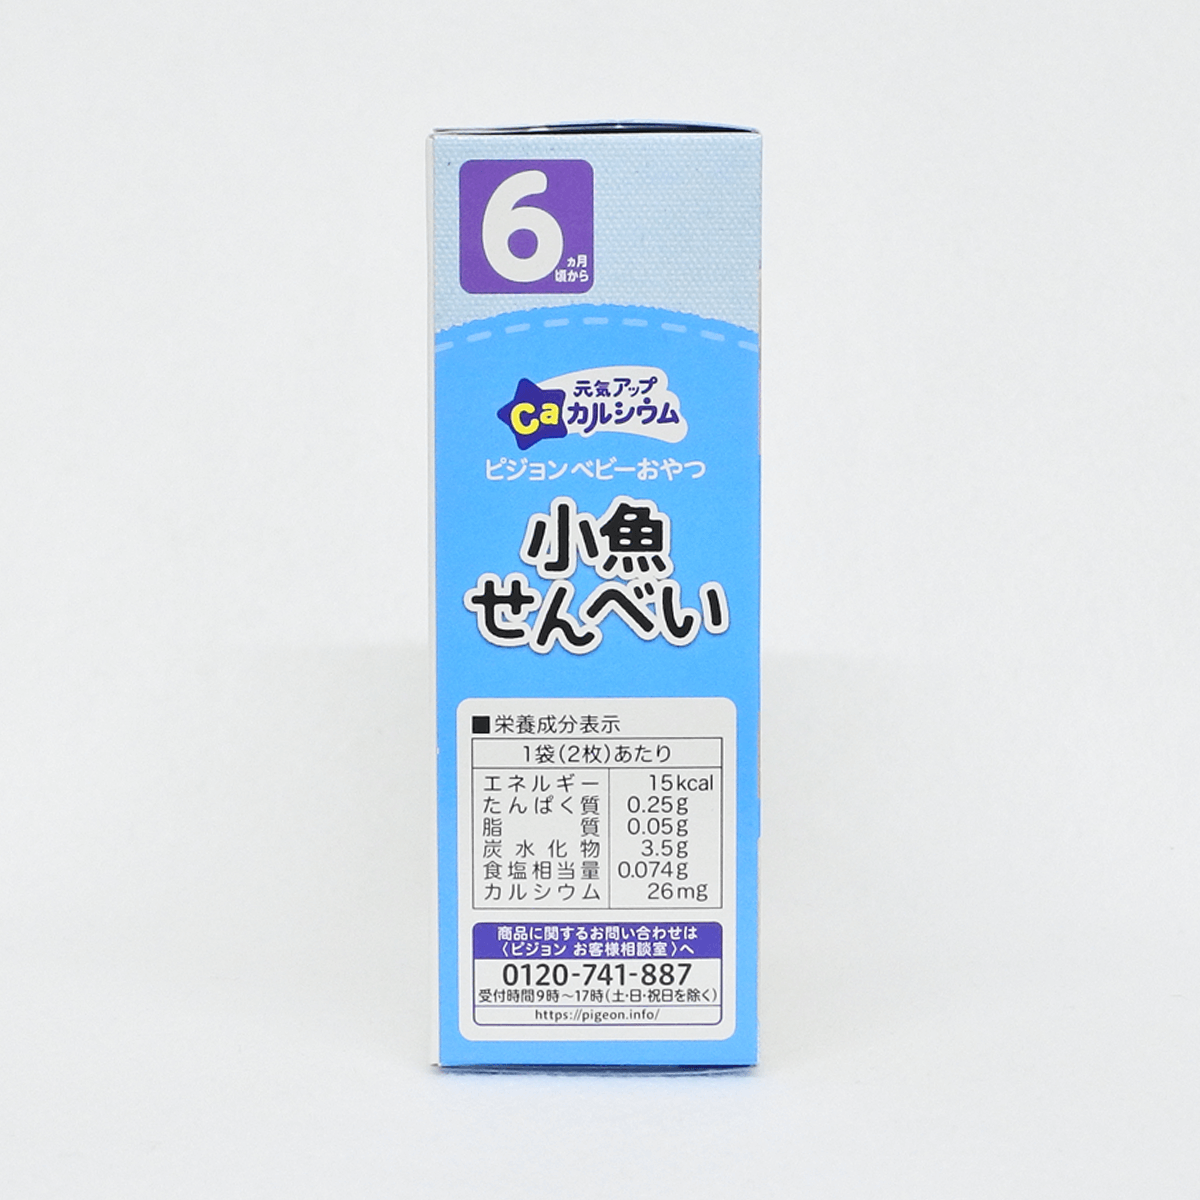 贝亲 Pigeon 含钙小鱼仙贝 婴儿饼干(6个月以上) 2片×6袋